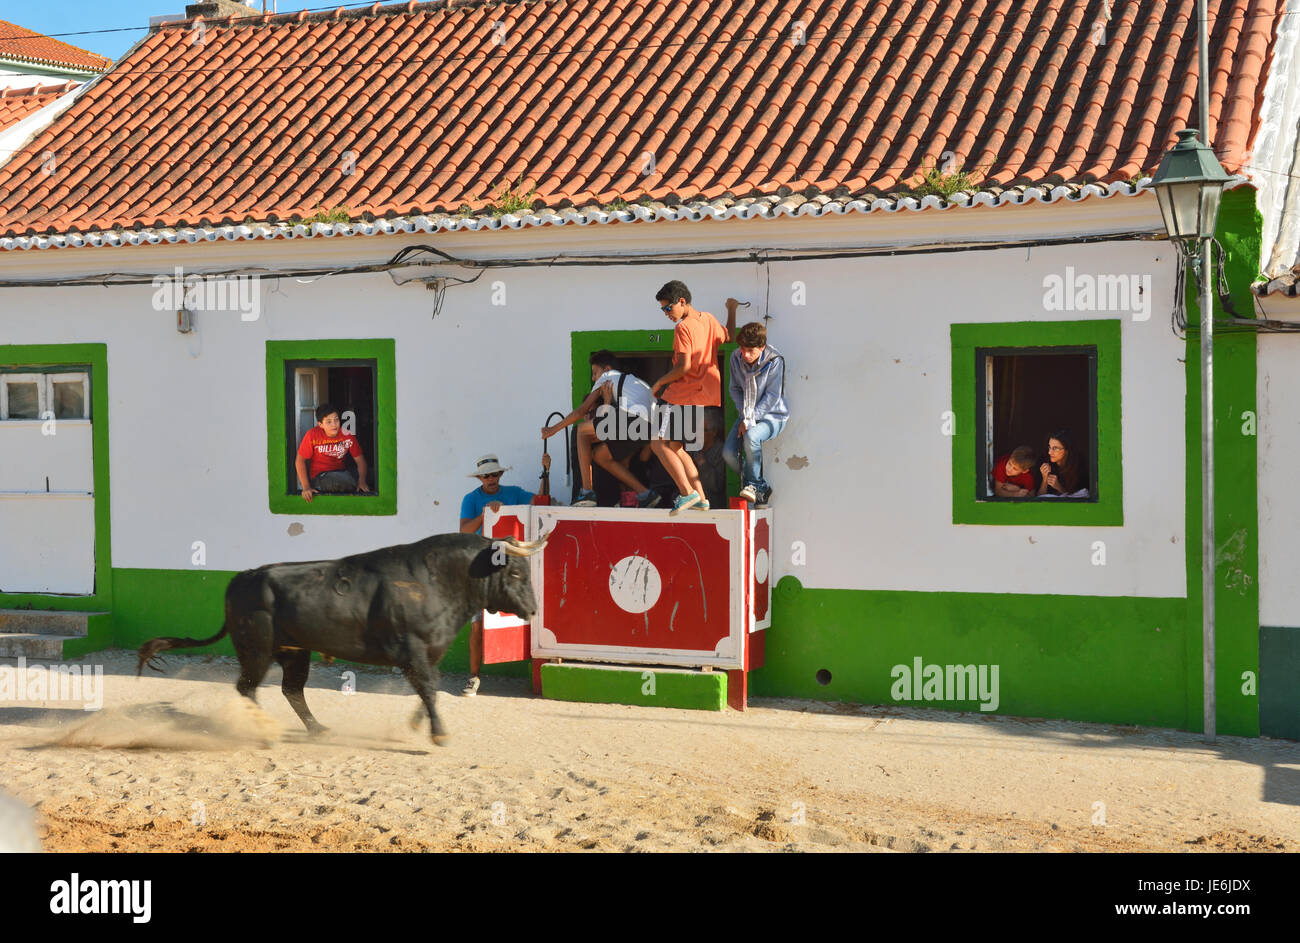 Traditionelle Ausführung von wilden Stieren während der Festlichkeiten Barrete Verde (grüne Kappe). Alcochete, Portugal Stockfoto